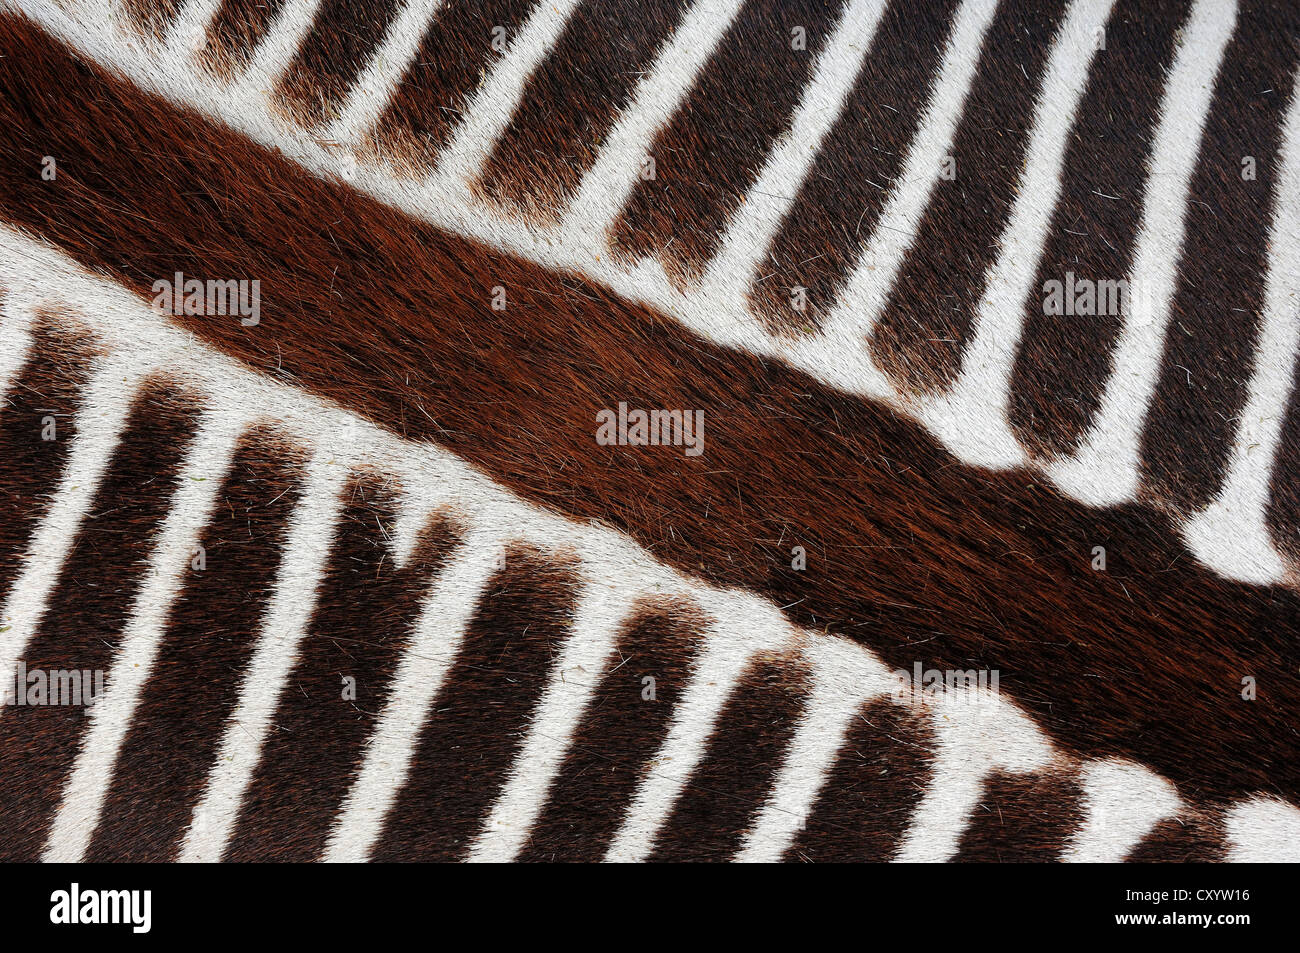 Grévy Zebras (Equus Grevyi), Detailansicht der Pelz, gefunden in Afrika, Gefangenschaft, Frankreich, Europa Stockfoto